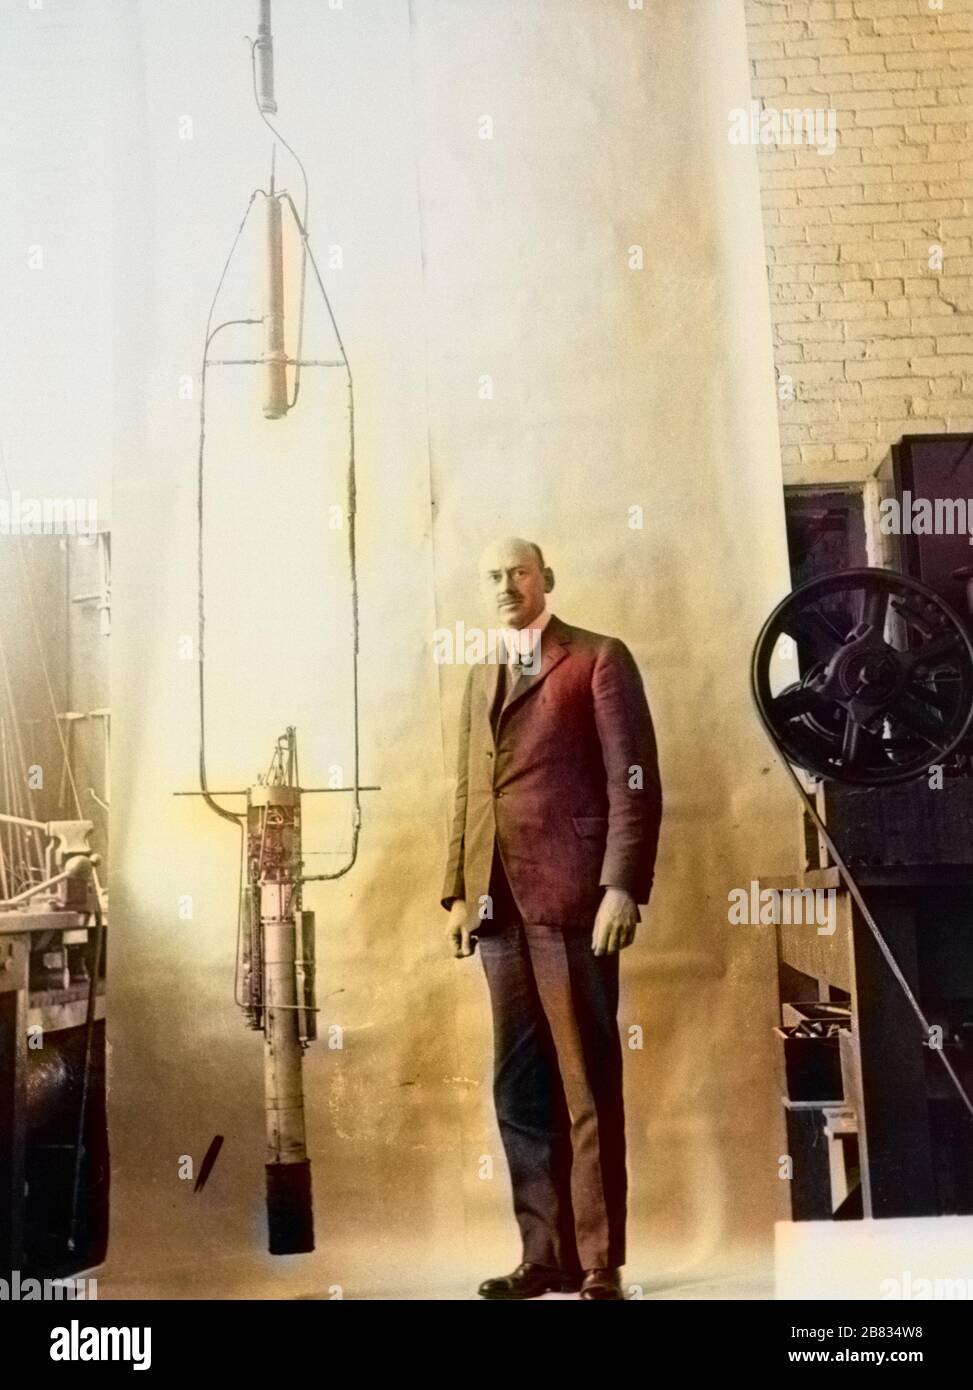 Dr. Robert H. Goddard posando junto a su cohete de combustible líquido, 1882. Imagen cortesía de la Administración Nacional de Aeronáutica y del espacio (NASA). Nota: La imagen se ha coloreado digitalmente mediante un proceso moderno. Es posible que los colores no tengan precisión de punto. () Foto de stock